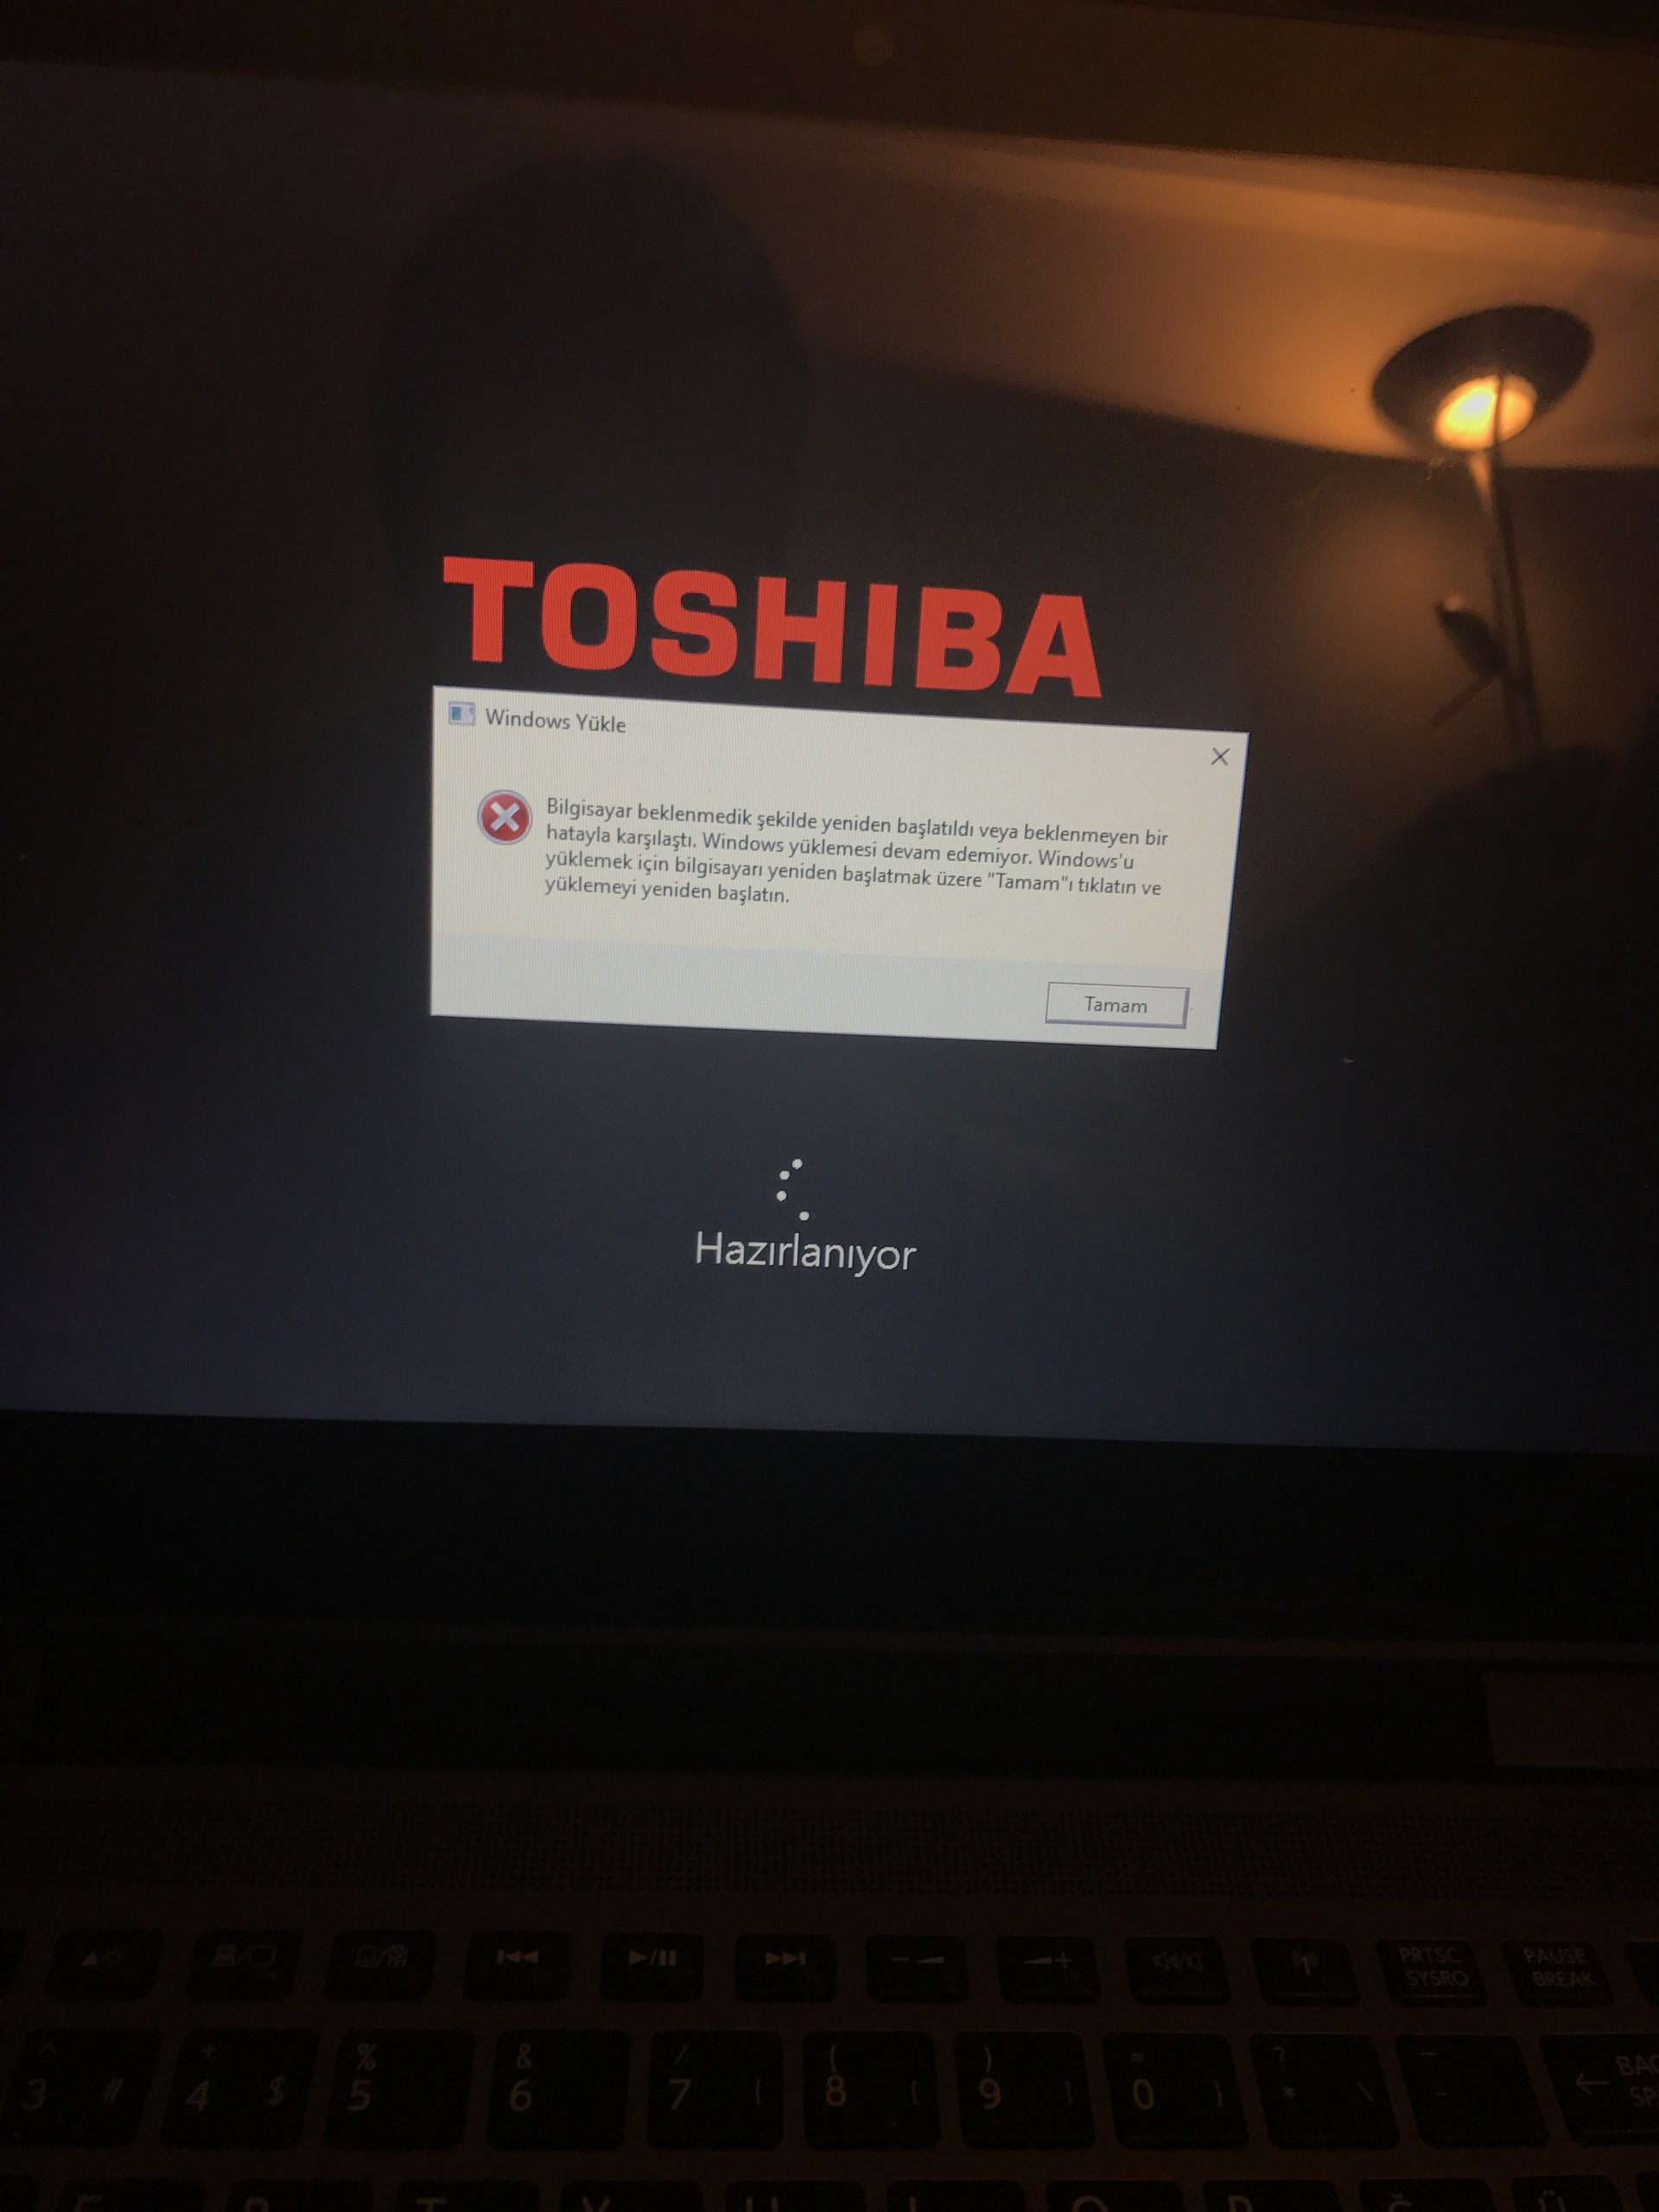  Toshiba 2015 sonrası windows 10 kurulumu